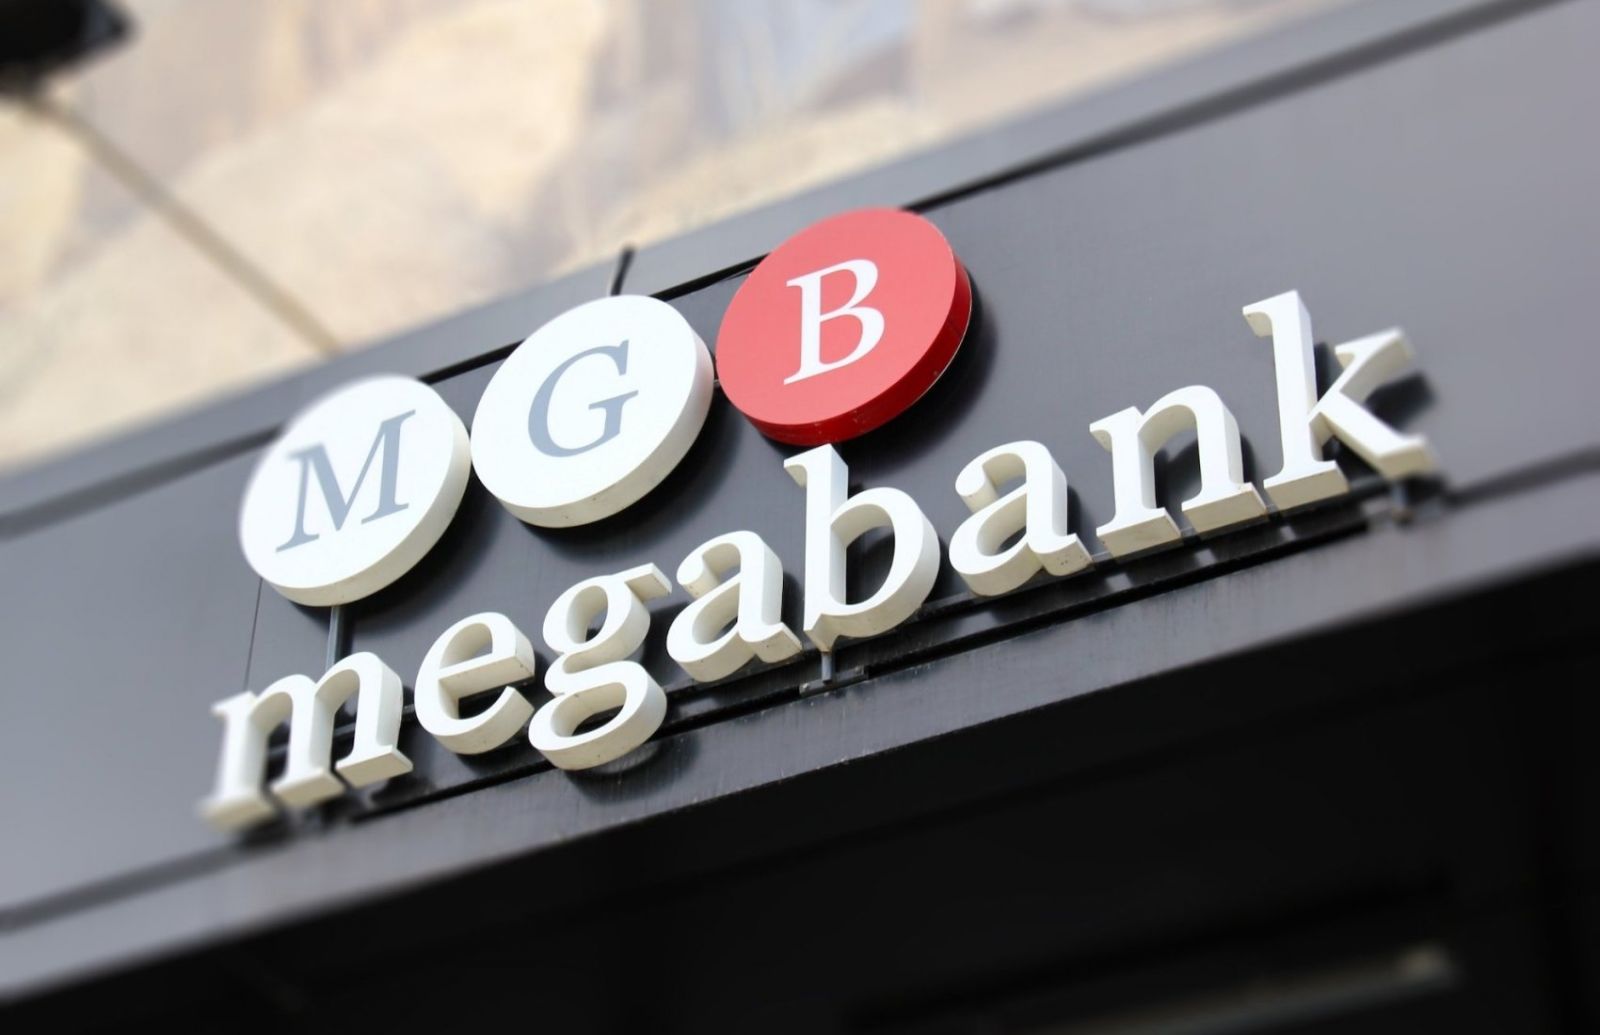 «Мегабанк» предлагается выкупить за 1 грн с дальнейшей продажей «Укрпочте»